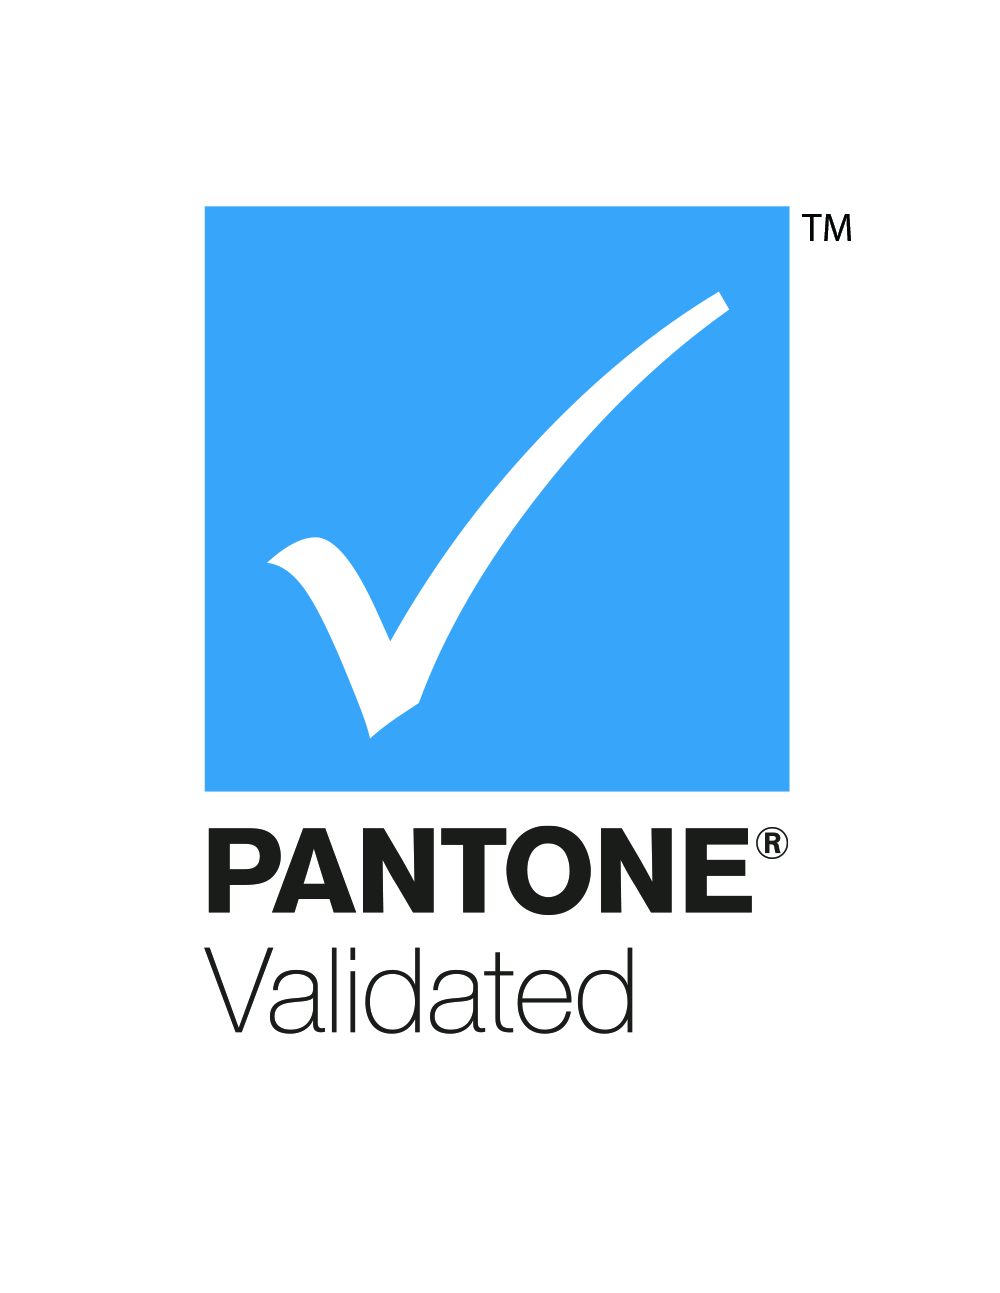 Pantone_validated